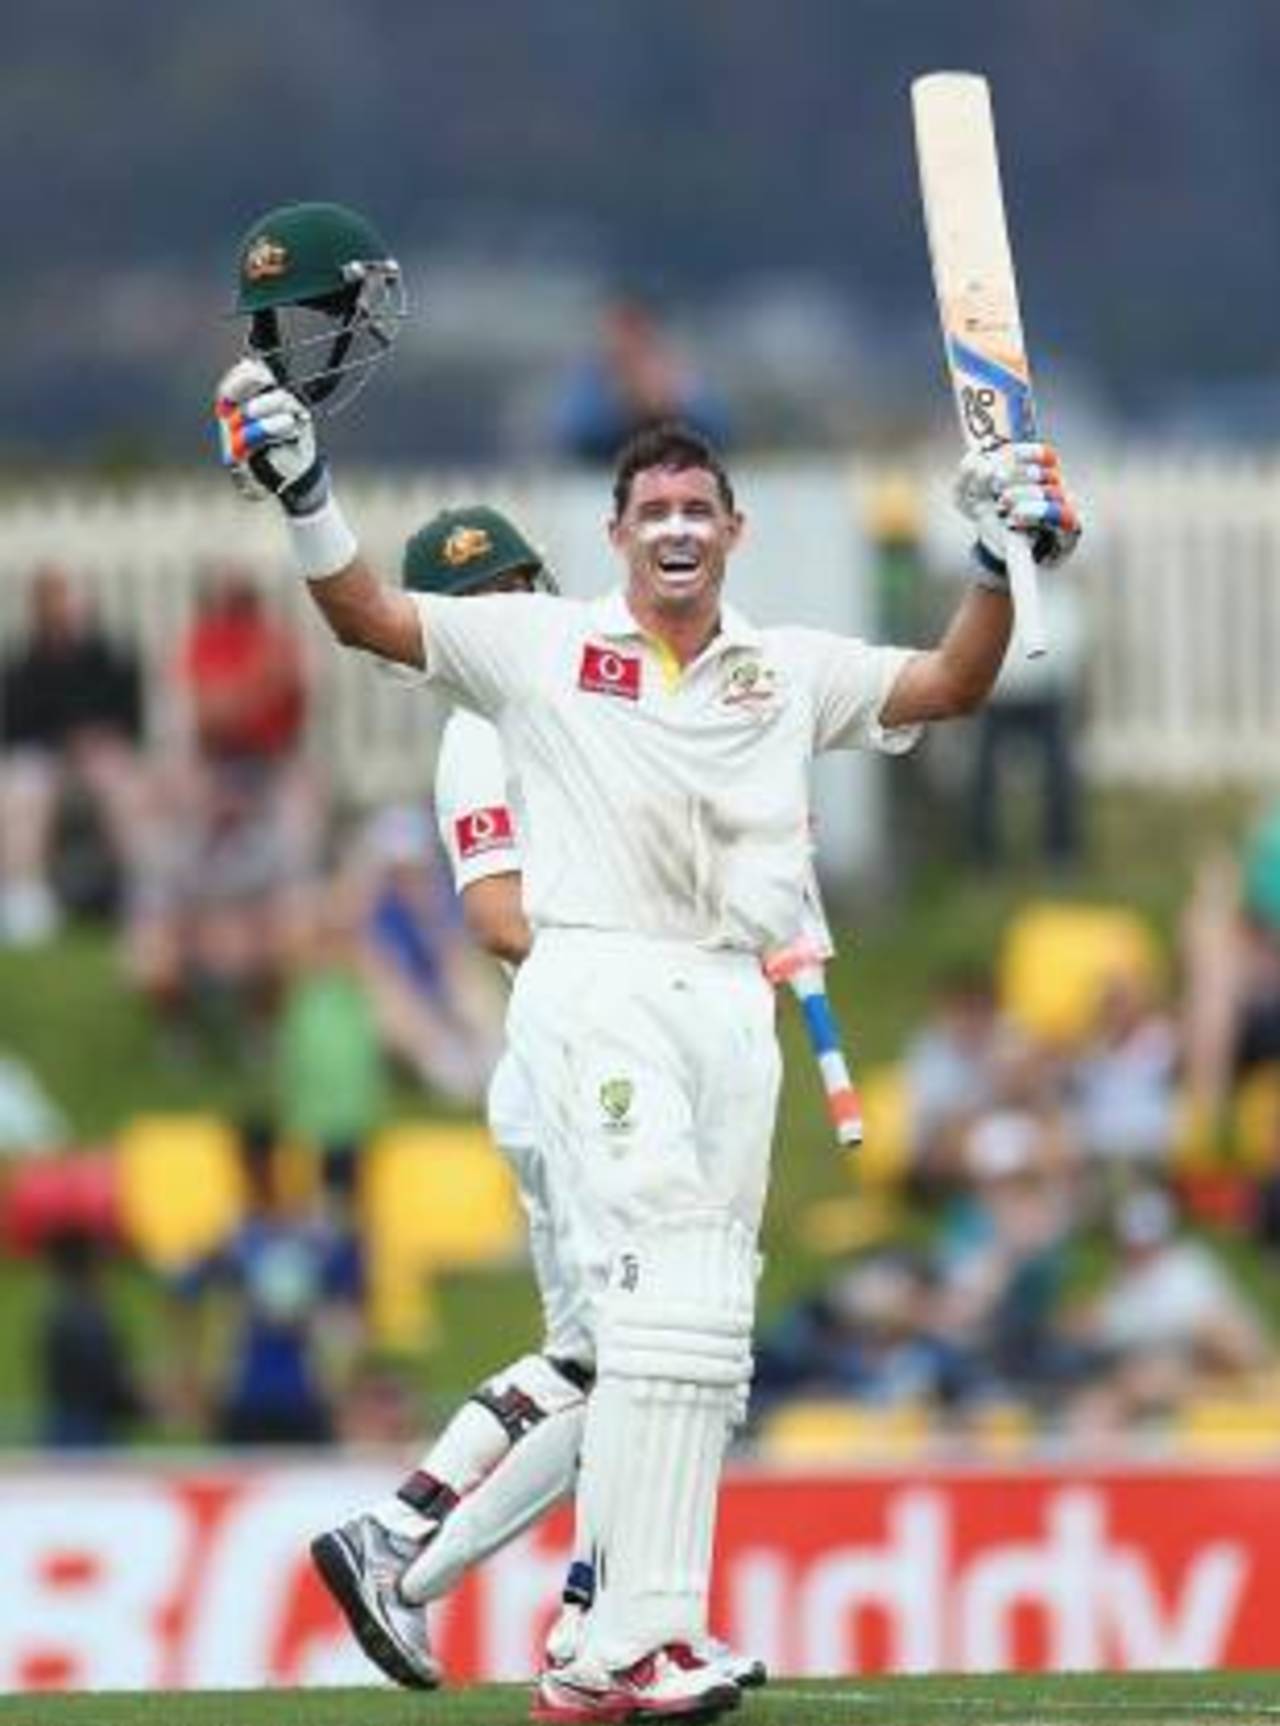 Michael Hussey celebrates his hundred, Australia v Sri Lanka, 1st Test, Hobart, 2nd day, December 15, 2012